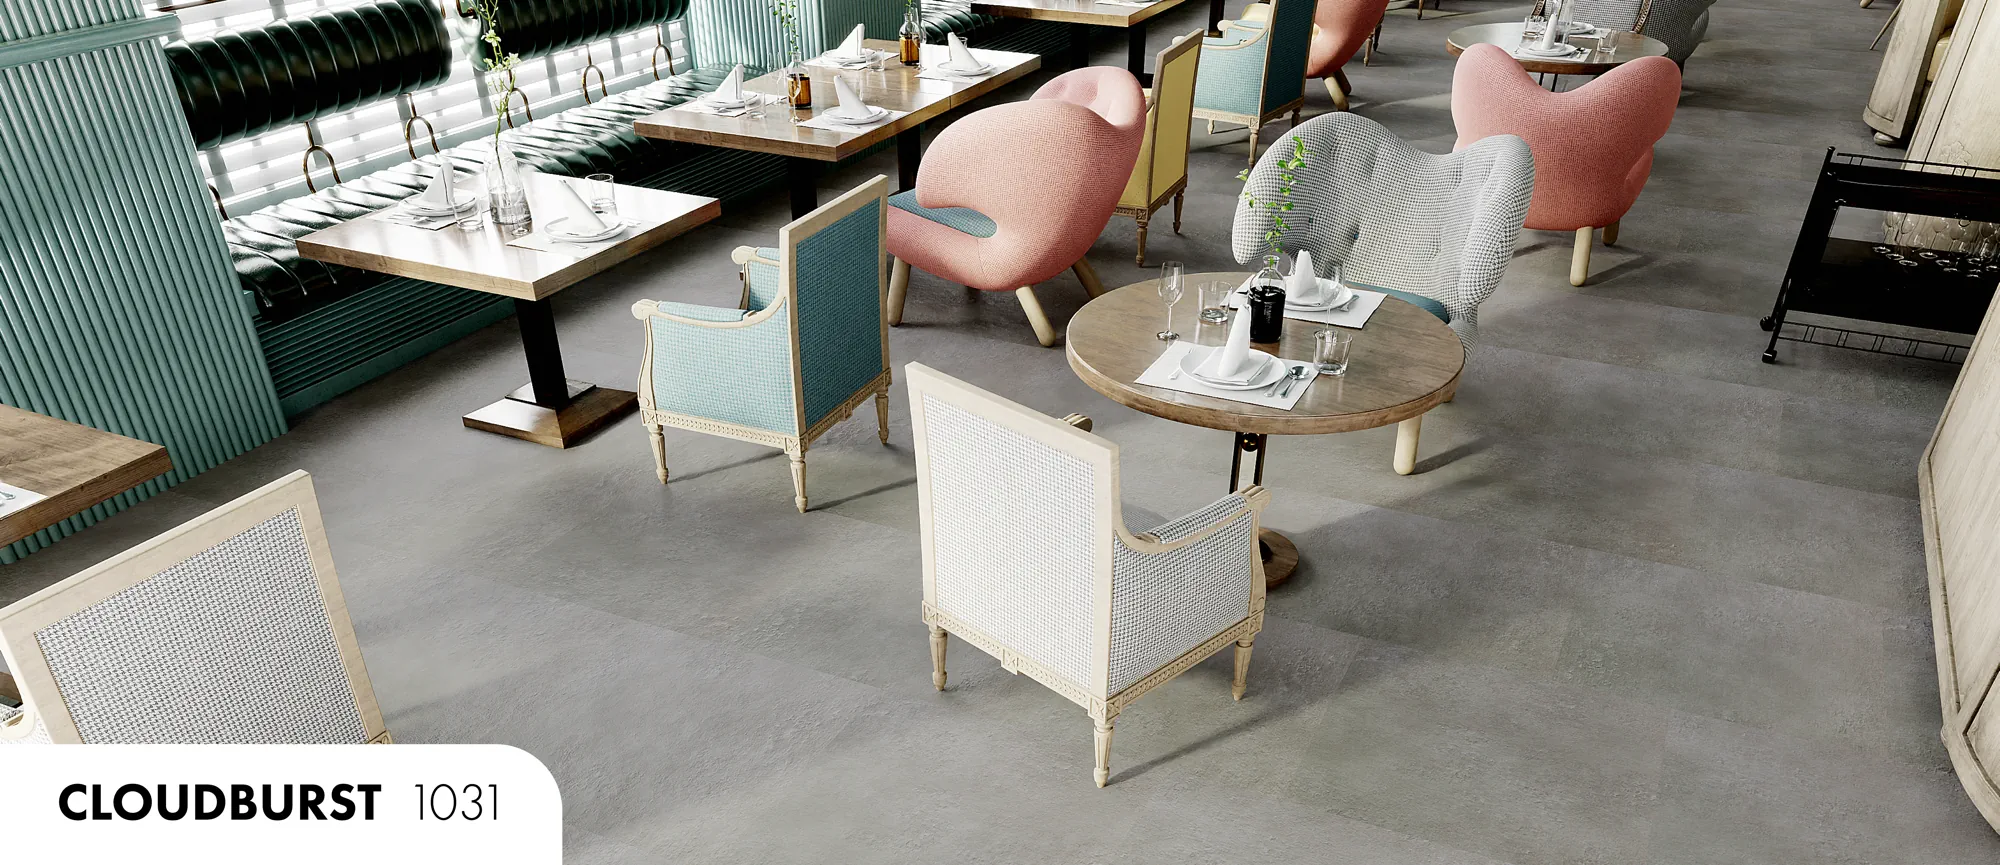 Modern brunch cafe with InstaGrip 28 Tile flooring installed.